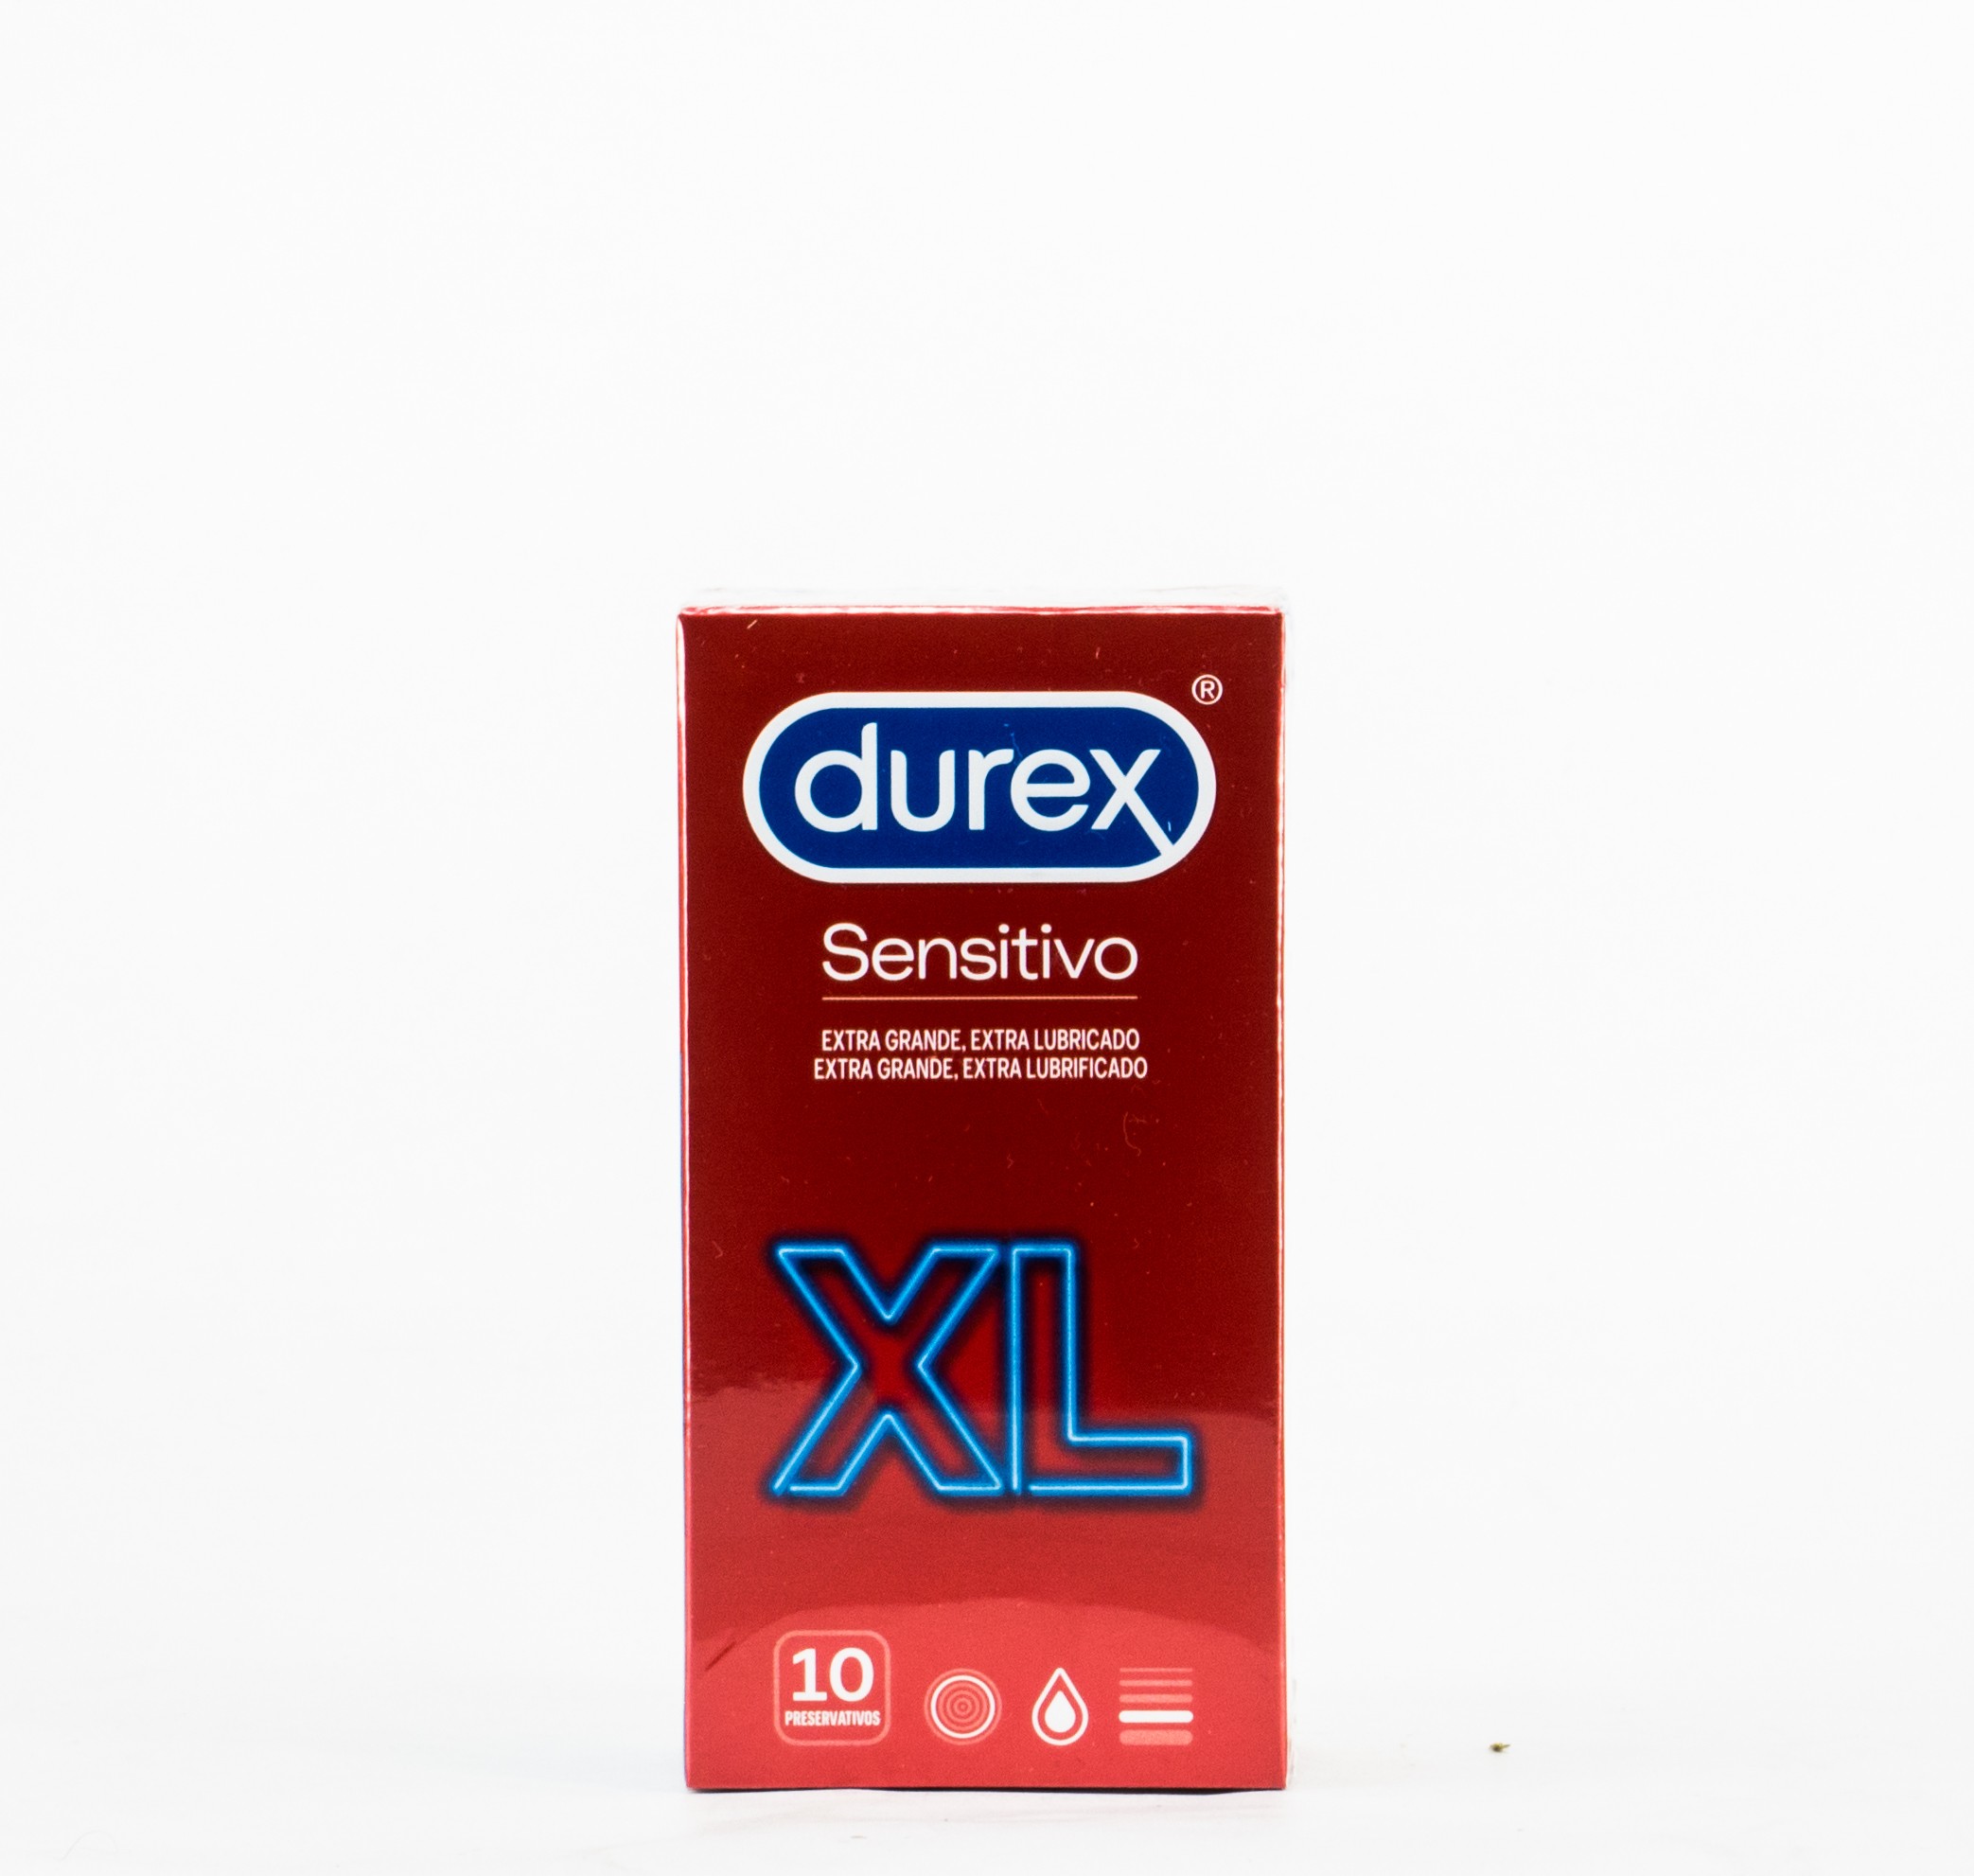 Durex Sensitivo XL, 10 Uds.